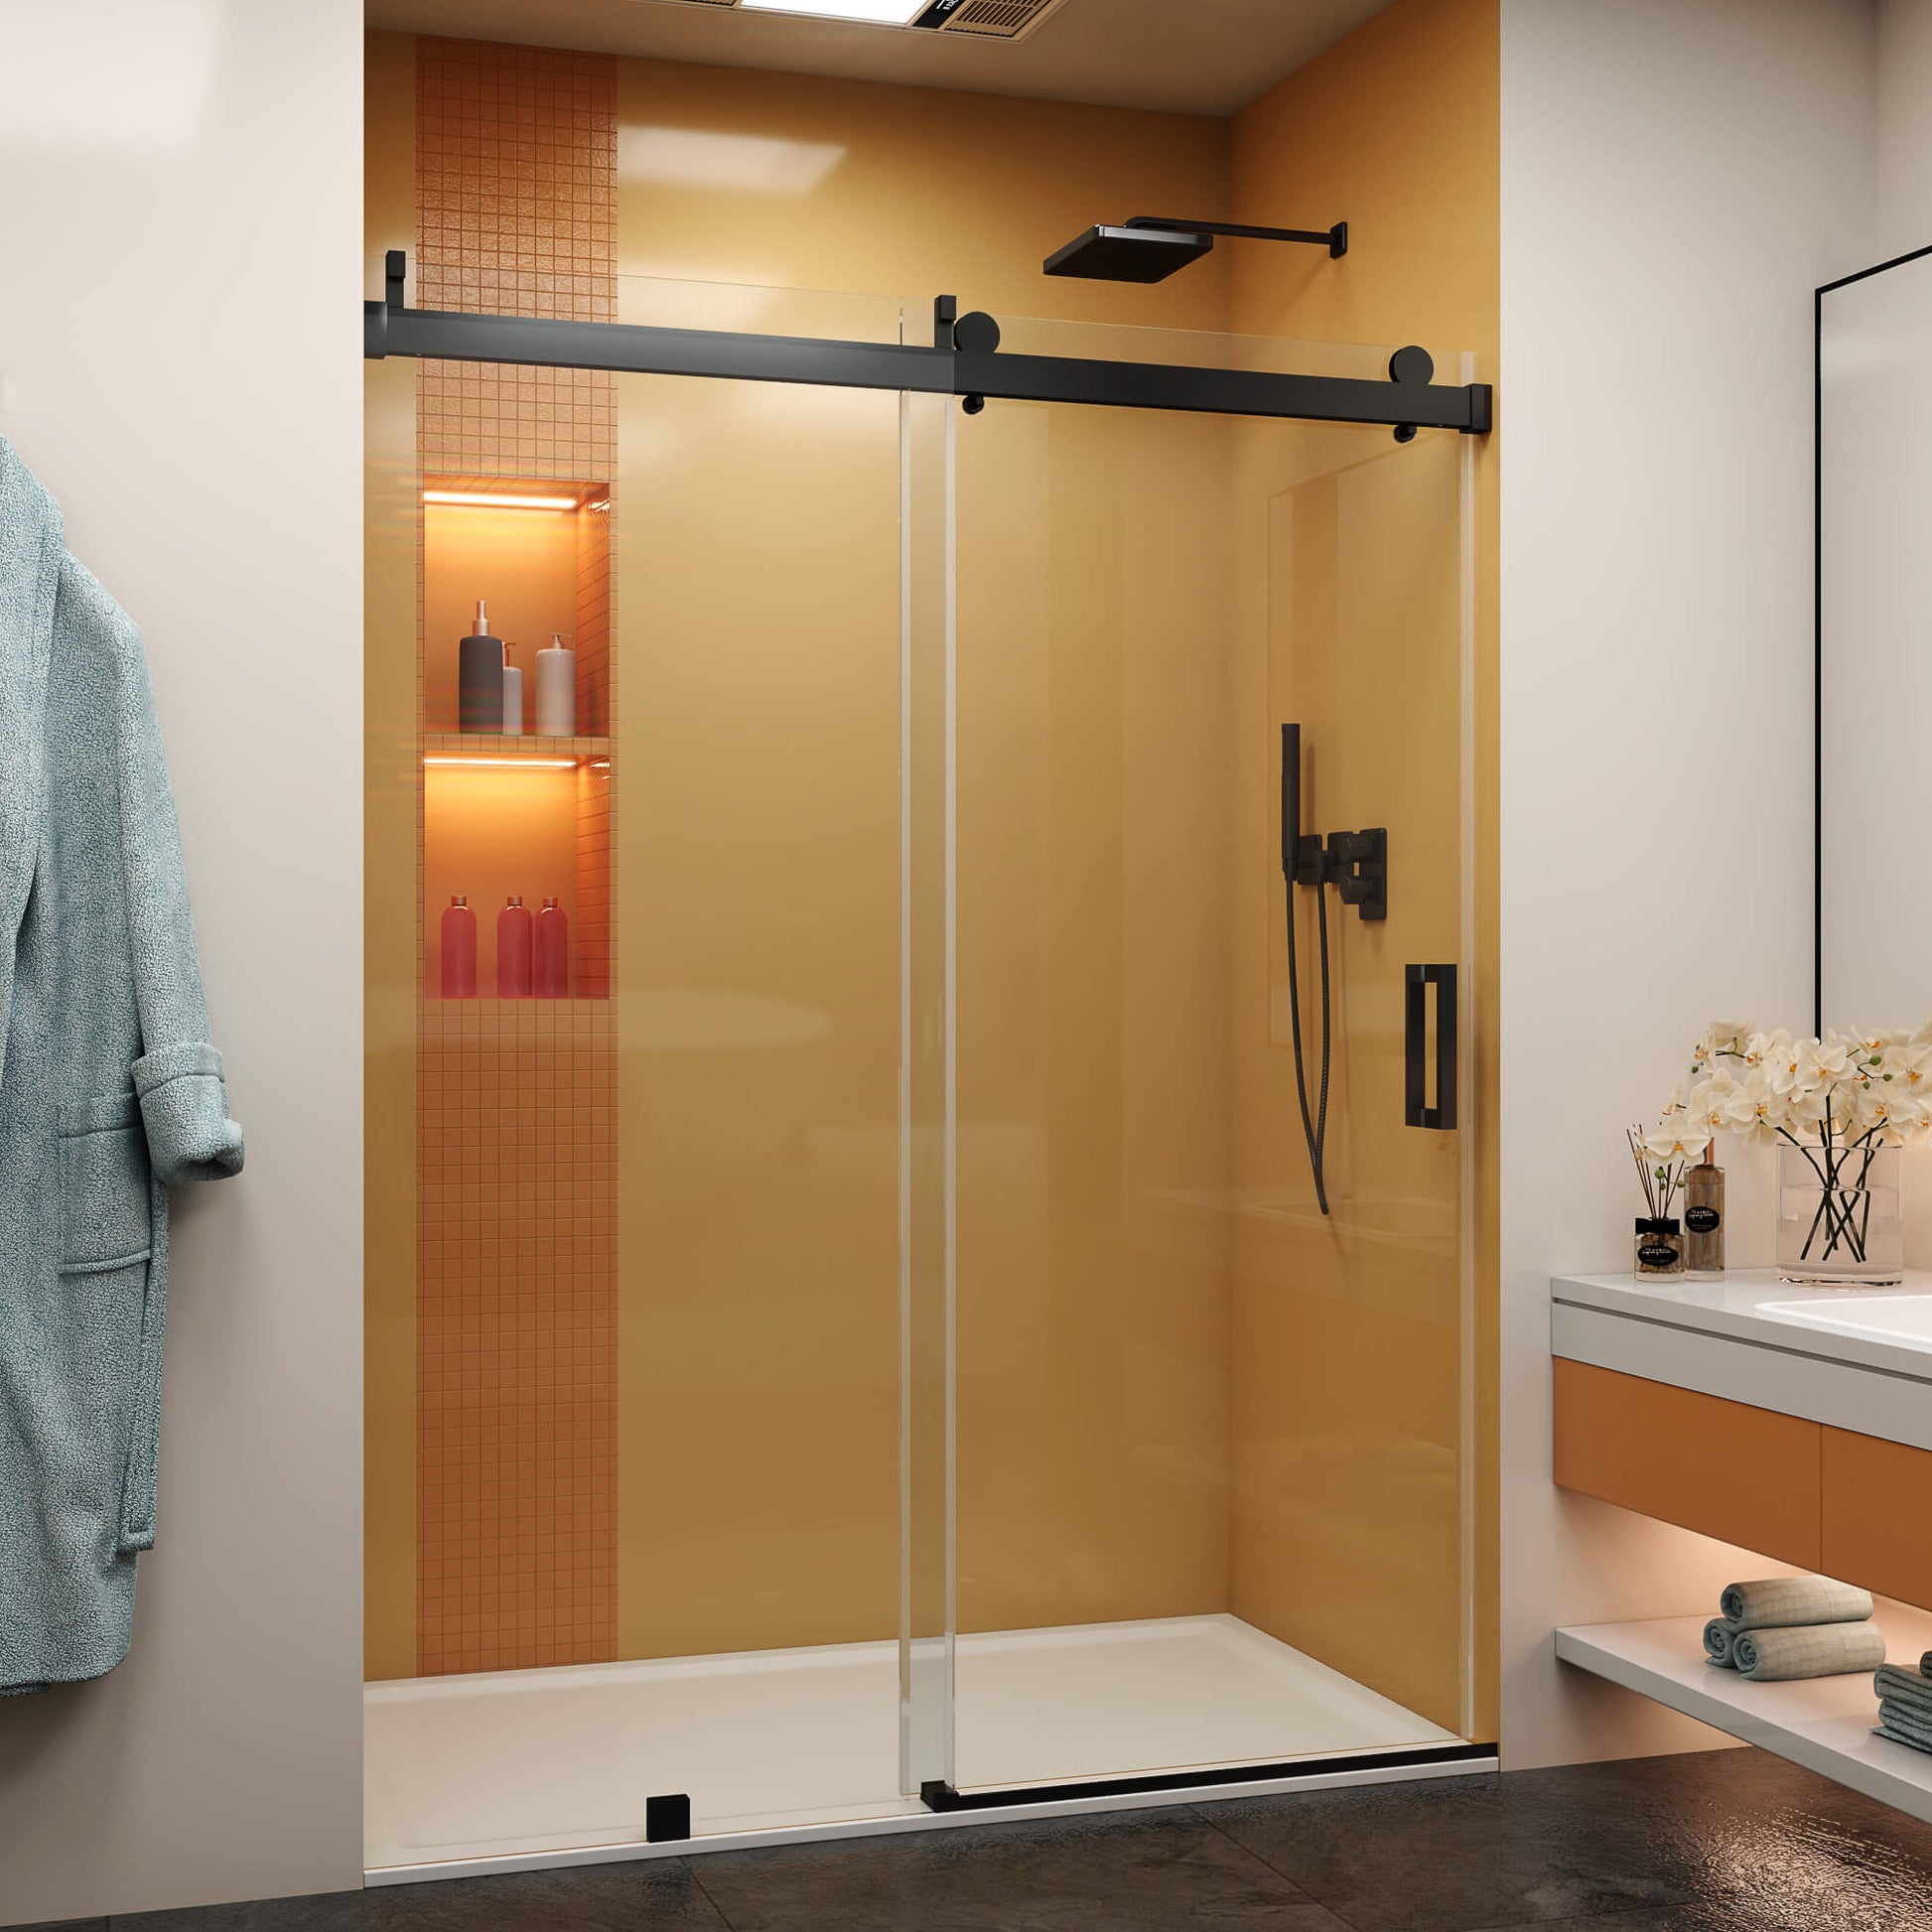 HT-2 Frameless Single Sliding Shower Door